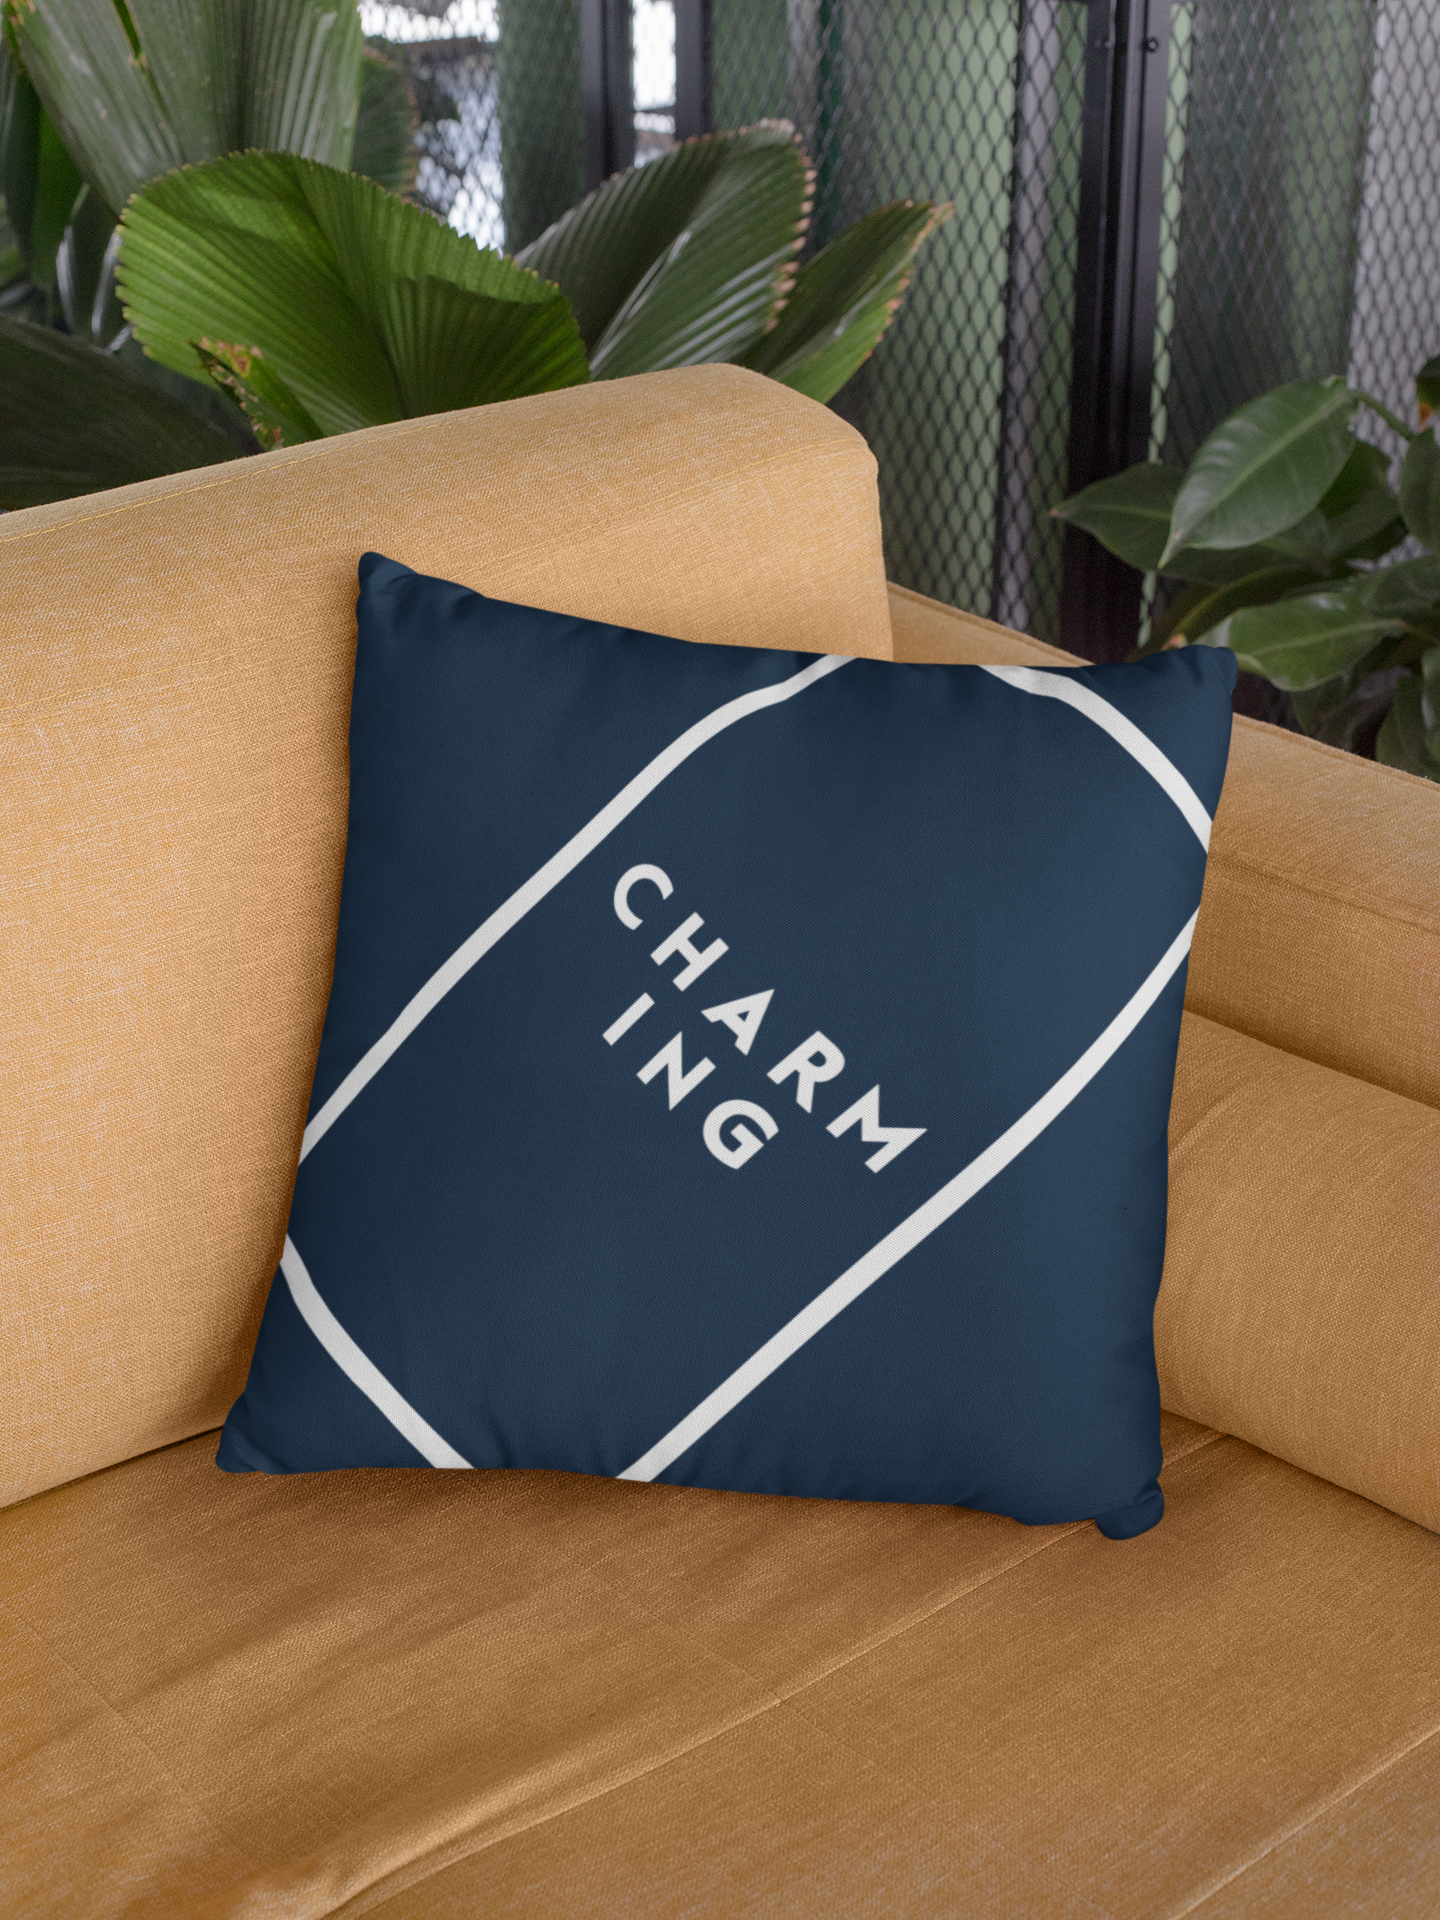 Charming Cushion Cover